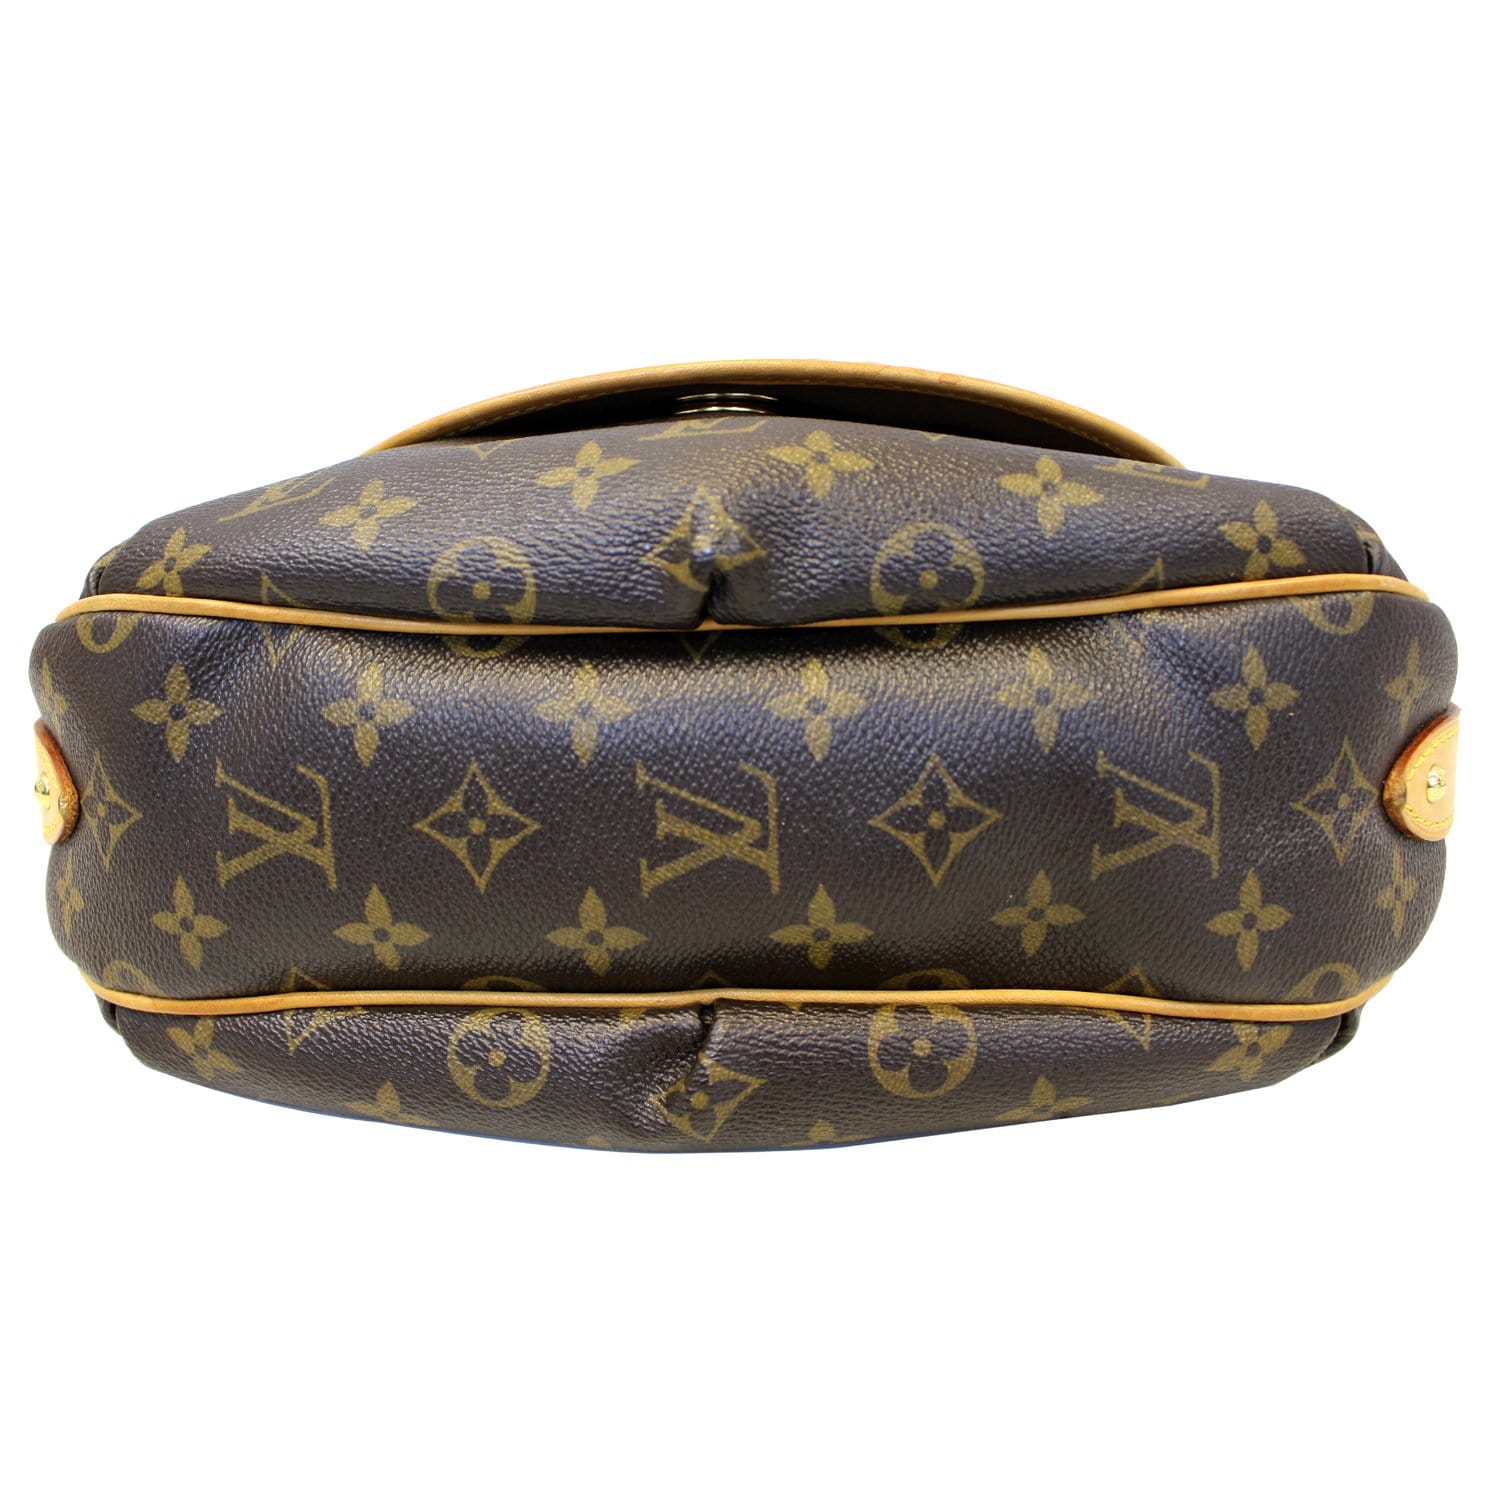 ❤️REVIEW / TOUR - Louis Vuitton Tulum PM Shoulder Bag 